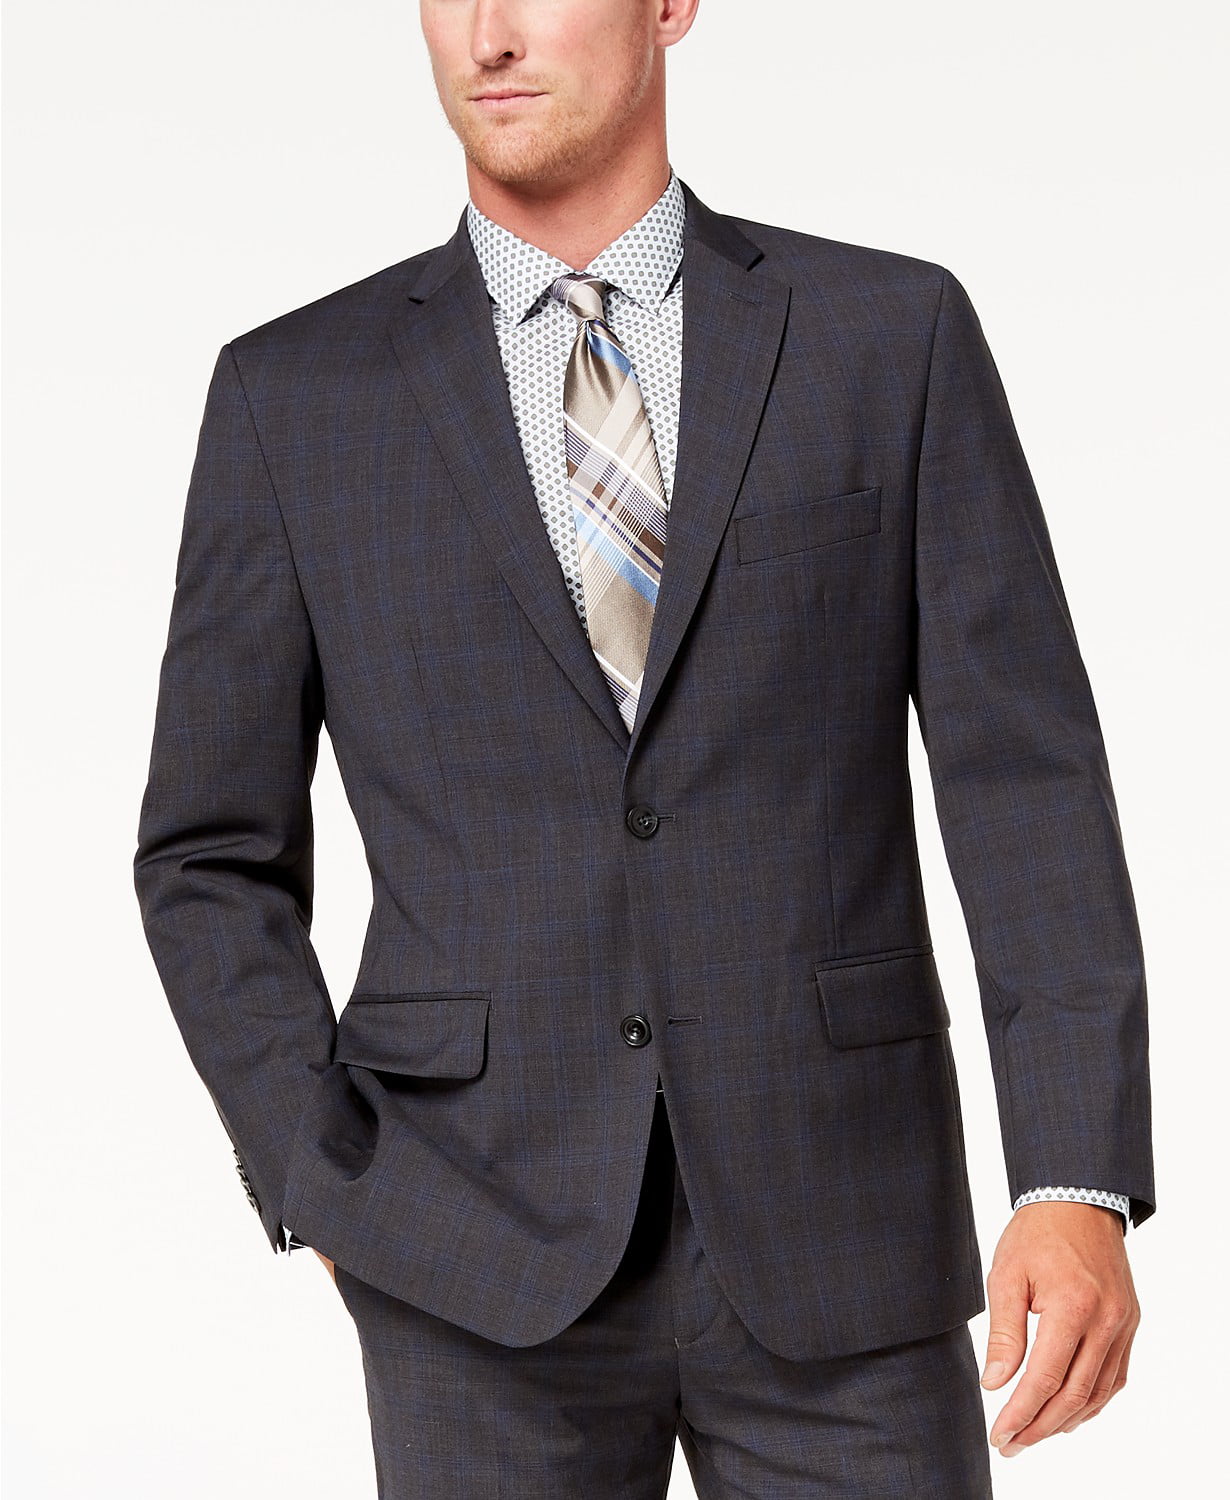 Michael Kors Men's Classic-Fit Airsoft Stretch Suit Jacket, Grey/Blue, 36  Short 